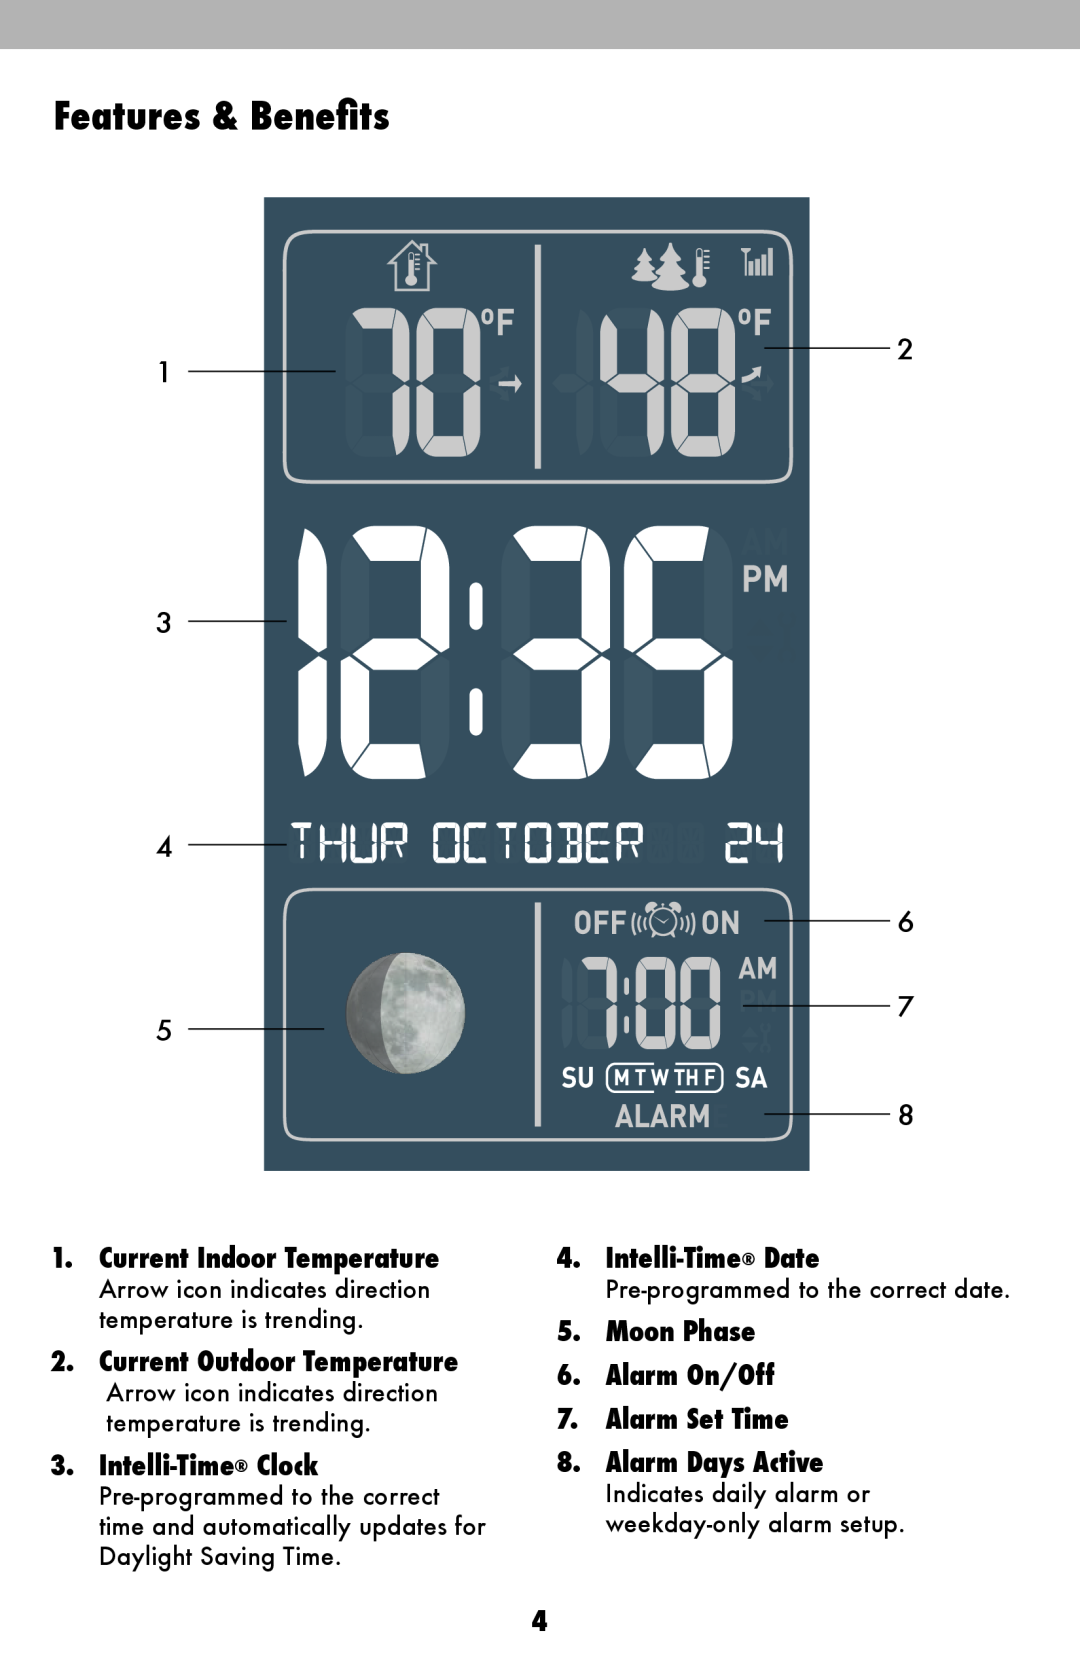 Acu-Rite 13026, 13020 Current Indoor Temperature, Current Outdoor Temperature, Intelli-Time Clock, Intelli-Time Date 